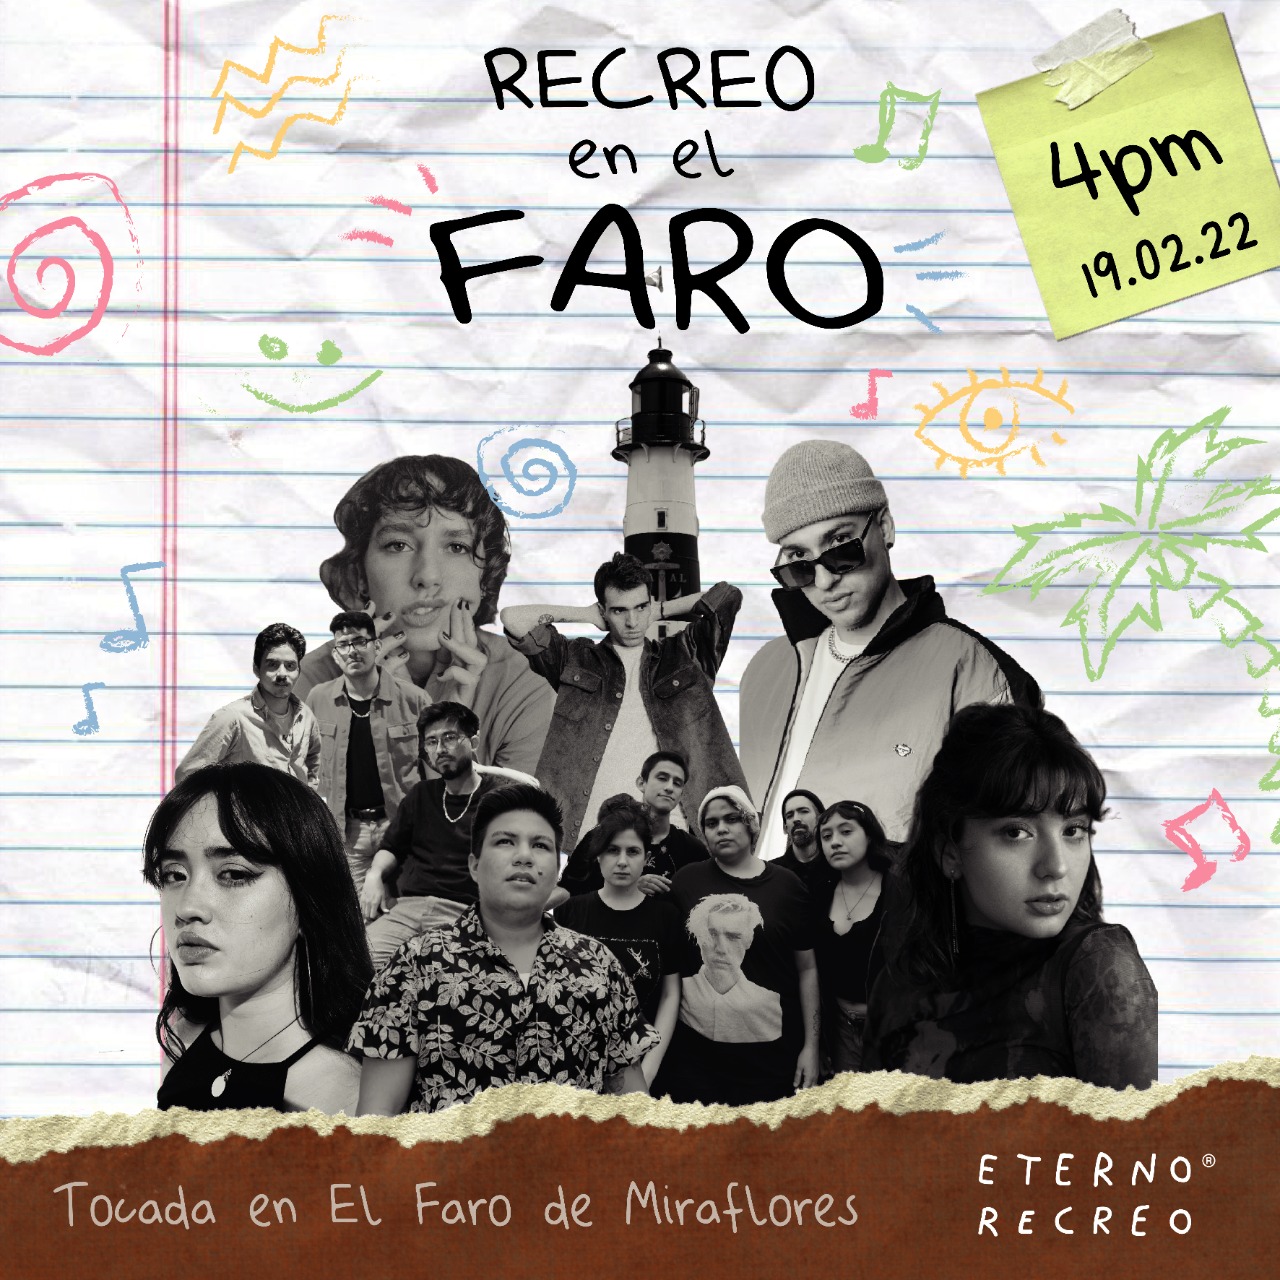 “Recreo en el Faro”, un evento que reúne a 8 artistas nacionales